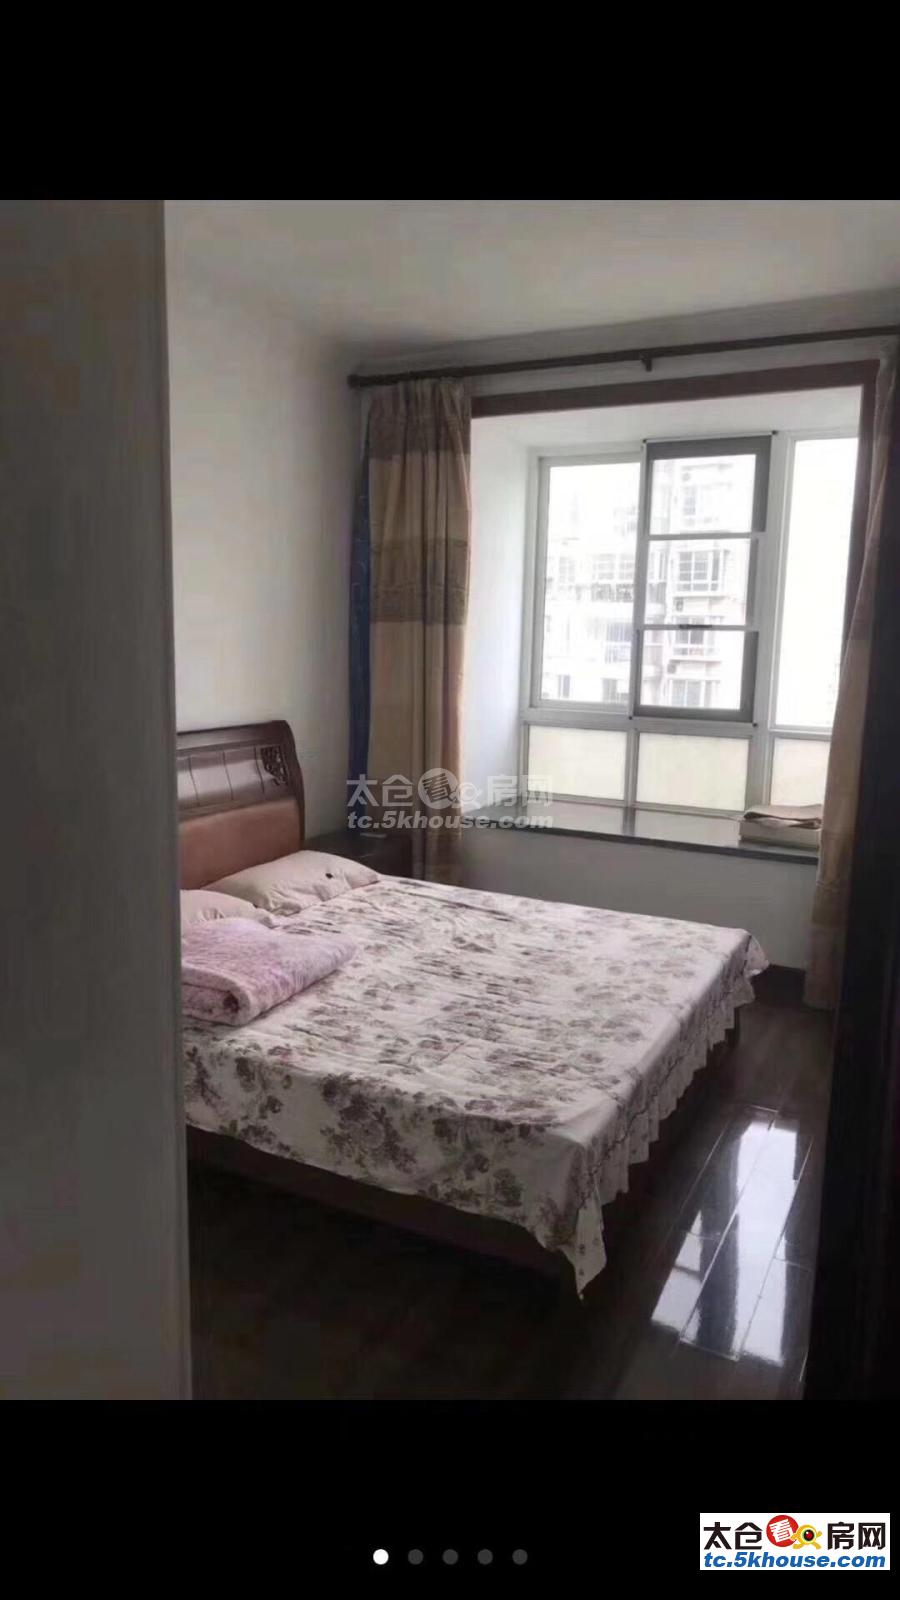 又好又便宜的房子哪里找?上海花园一期 168万 2室2厅1卫 精装修